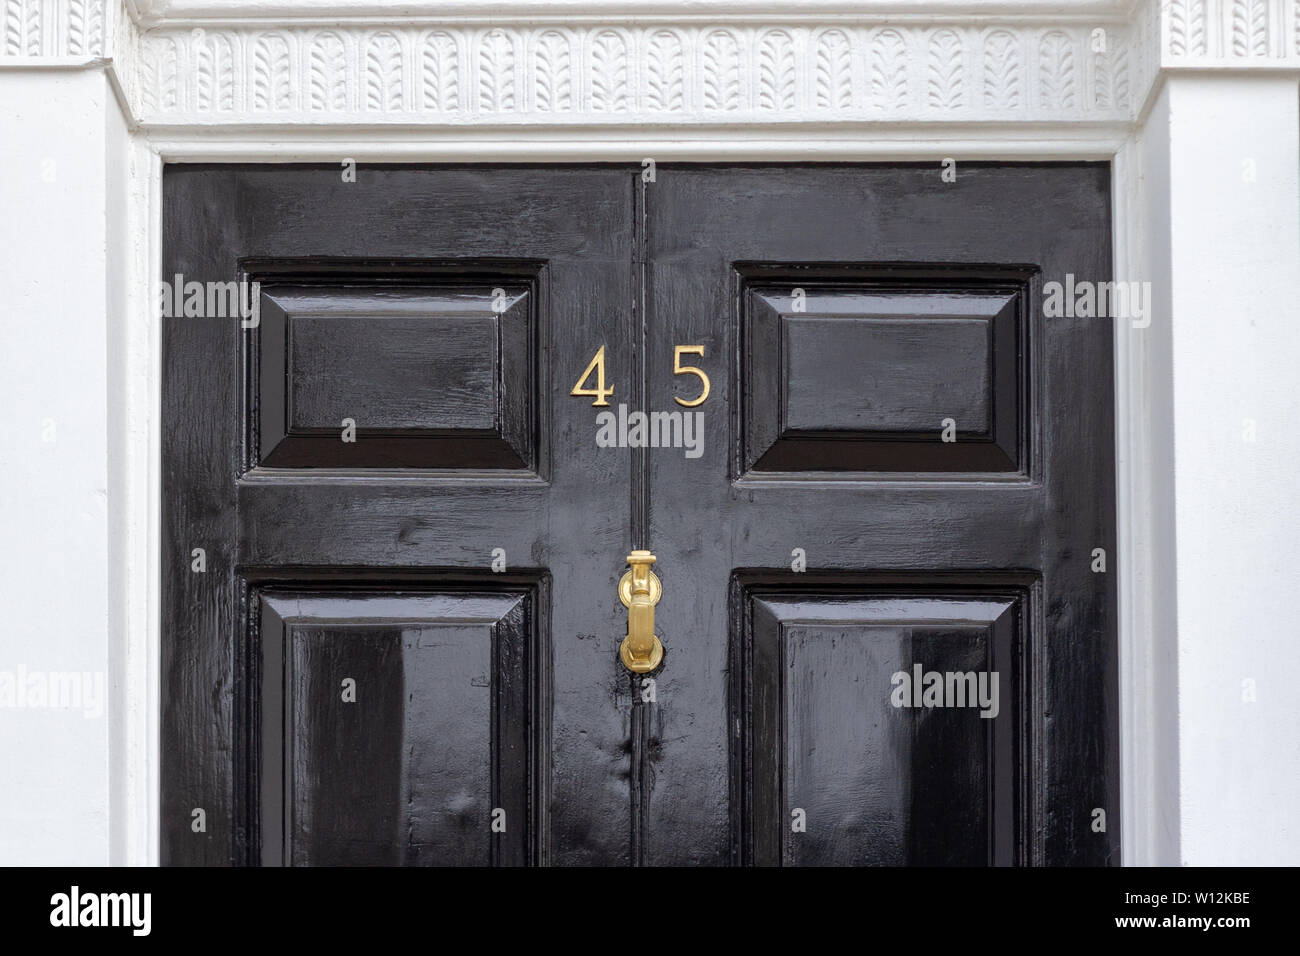 Haus Nummer 45 mit den vierzig - fünf in Metall Ziffern auf einem schwarz lackierten alte hölzerne Eingangstür mit geschnitzten weißen Stein Türrahmen Stockfoto